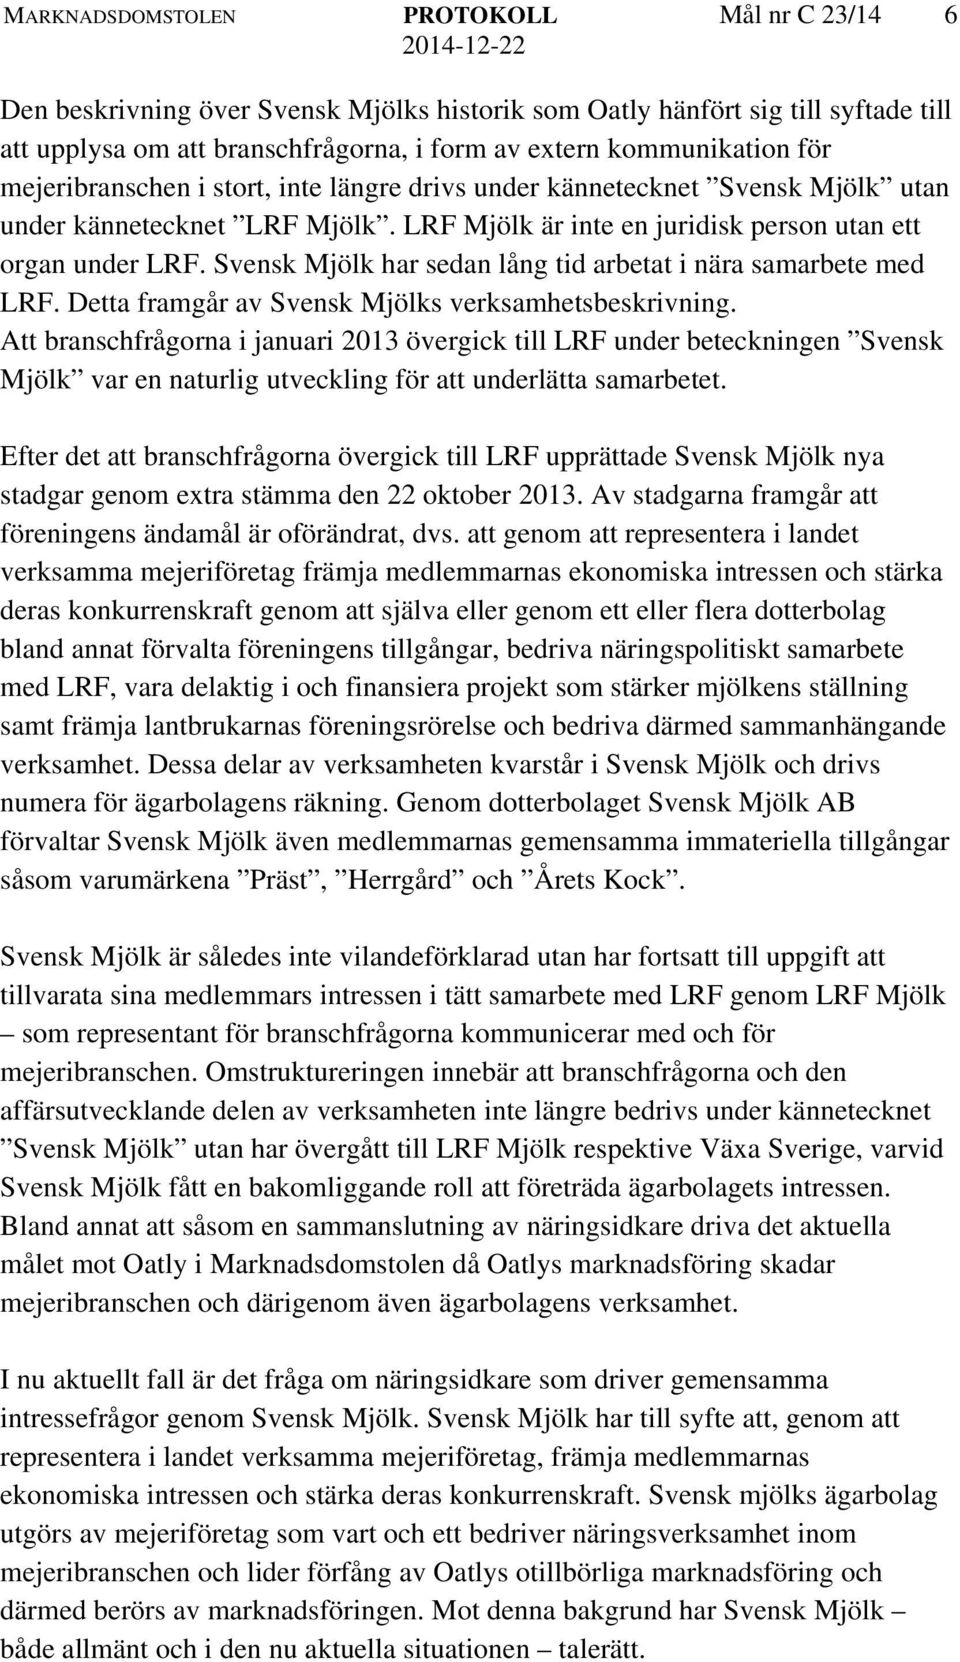 Svensk Mjölk har sedan lång tid arbetat i nära samarbete med LRF. Detta framgår av Svensk Mjölks verksamhetsbeskrivning.